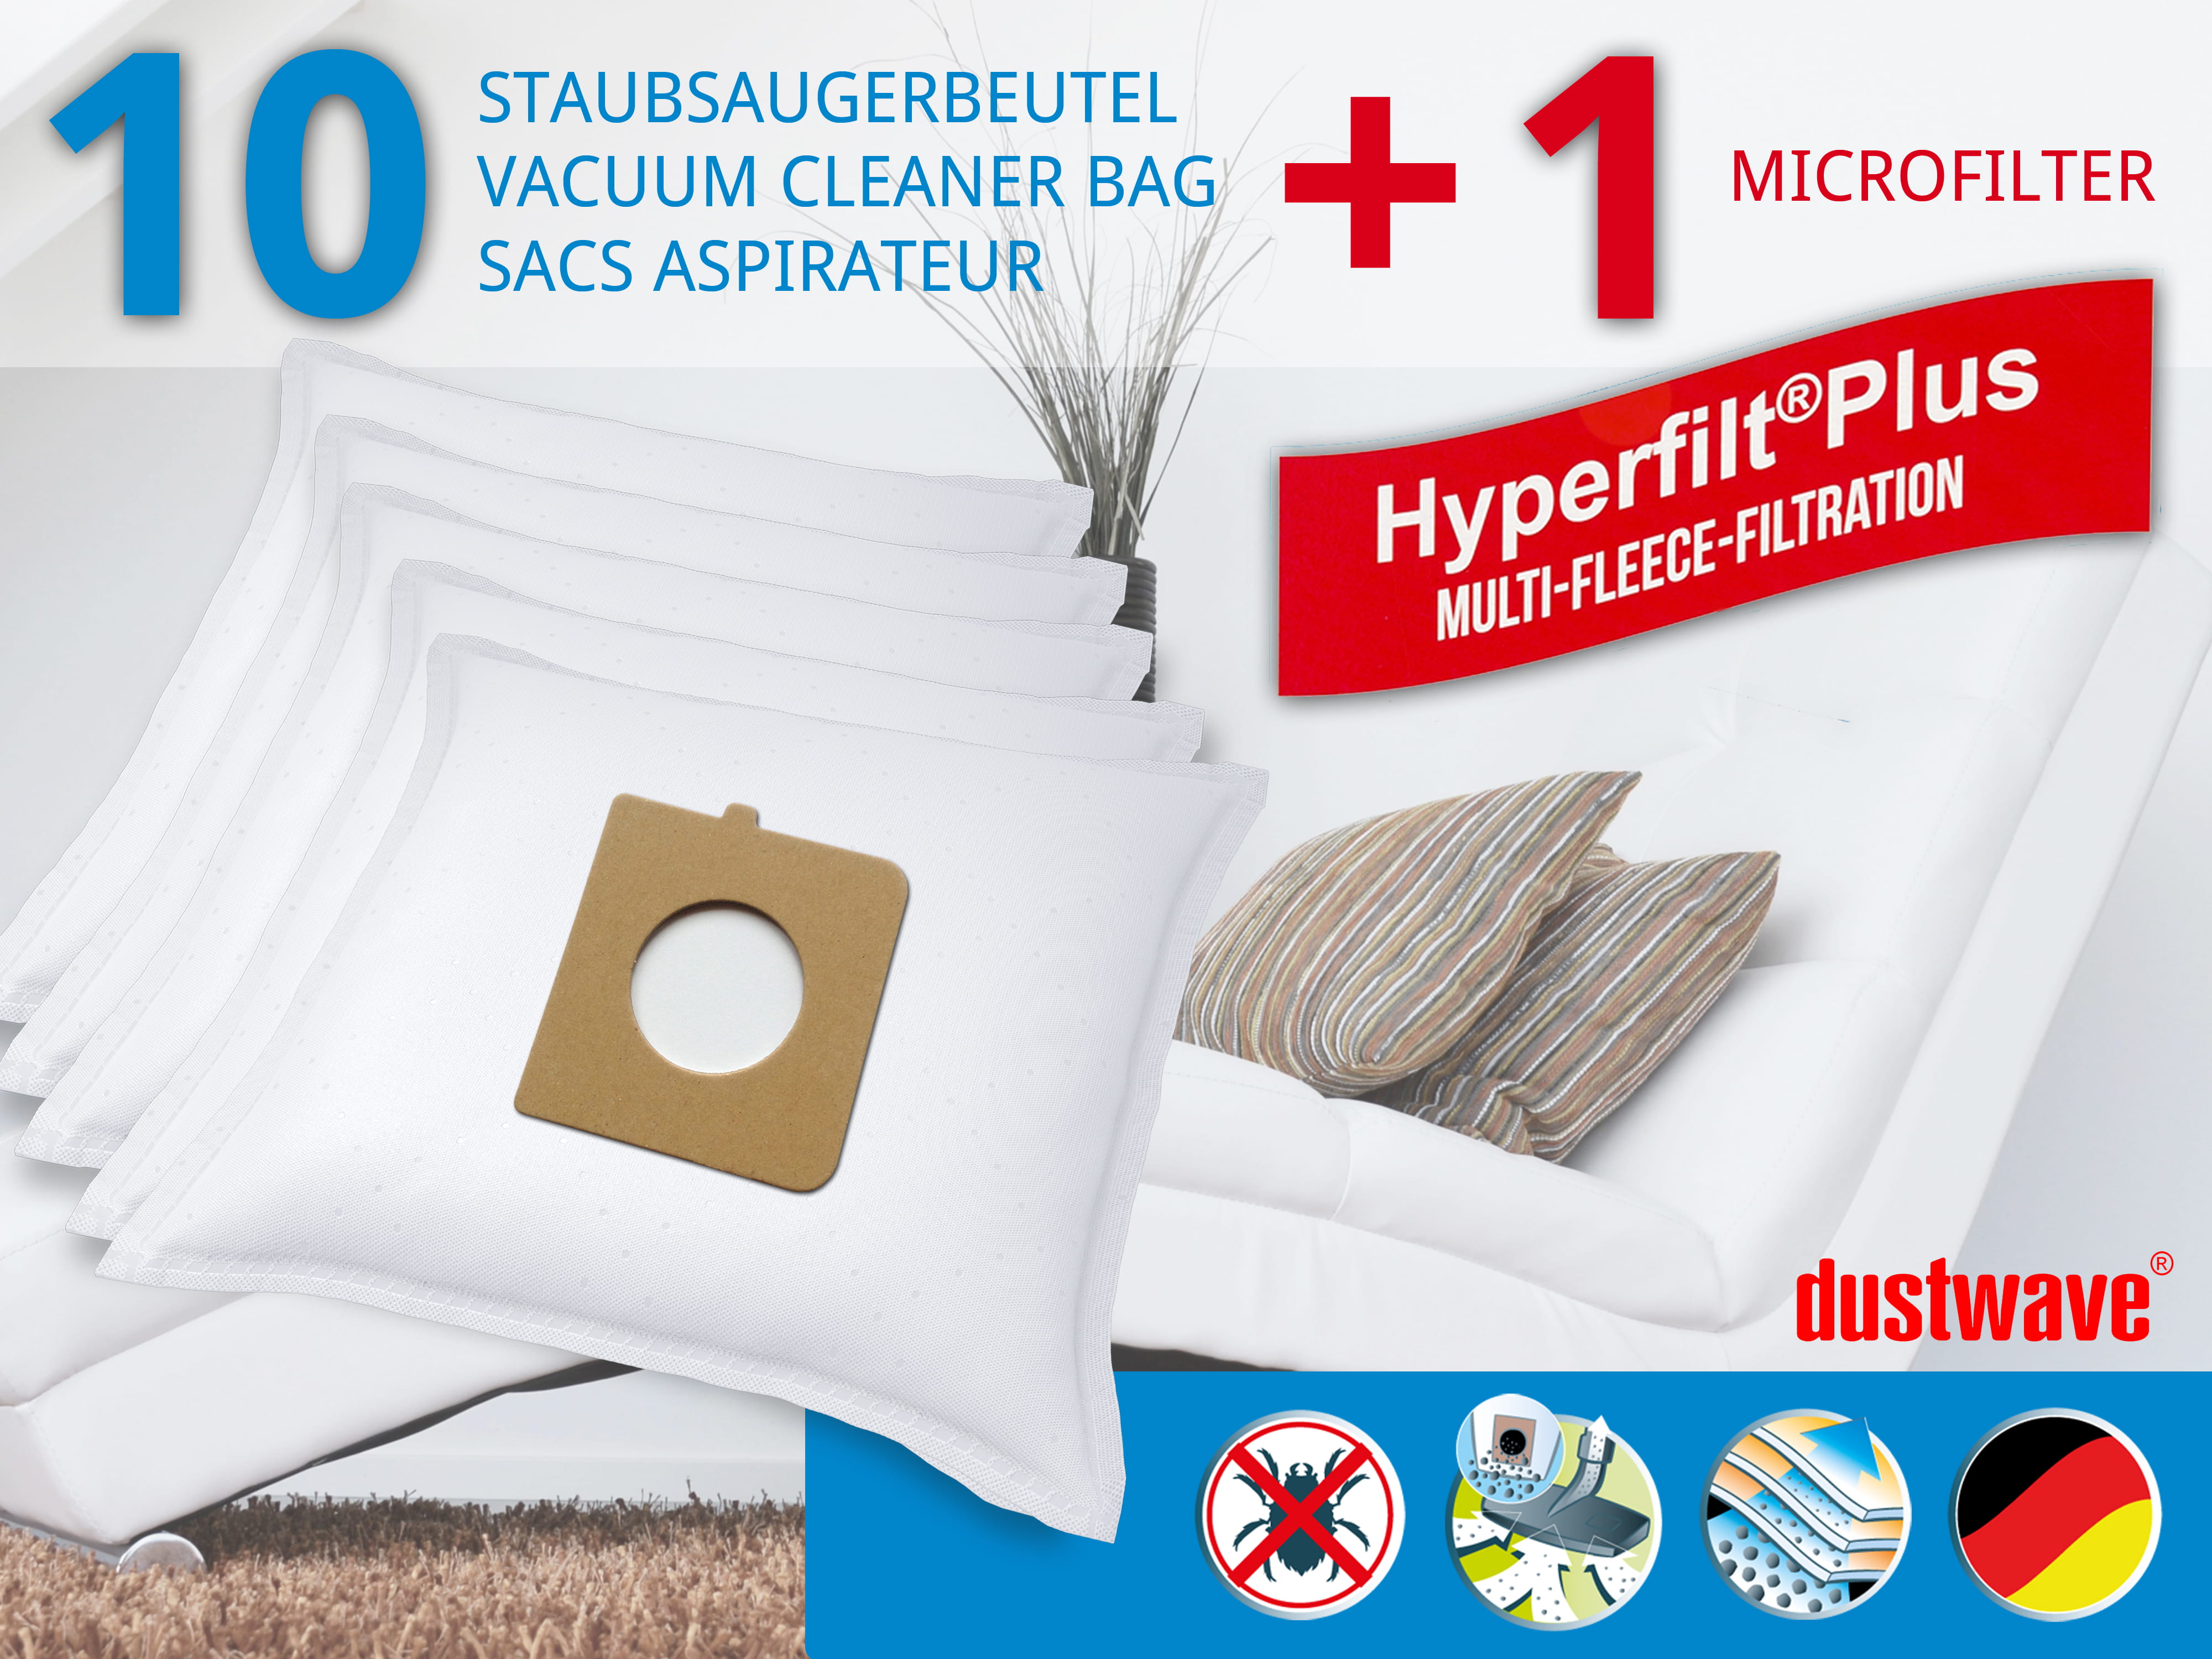 Dustwave® 10 Staubsaugerbeutel für AFK BS 1200 W.30 - hocheffizient, mehrlagiges Mikrovlies mit Hygieneverschluss - Made in Germany